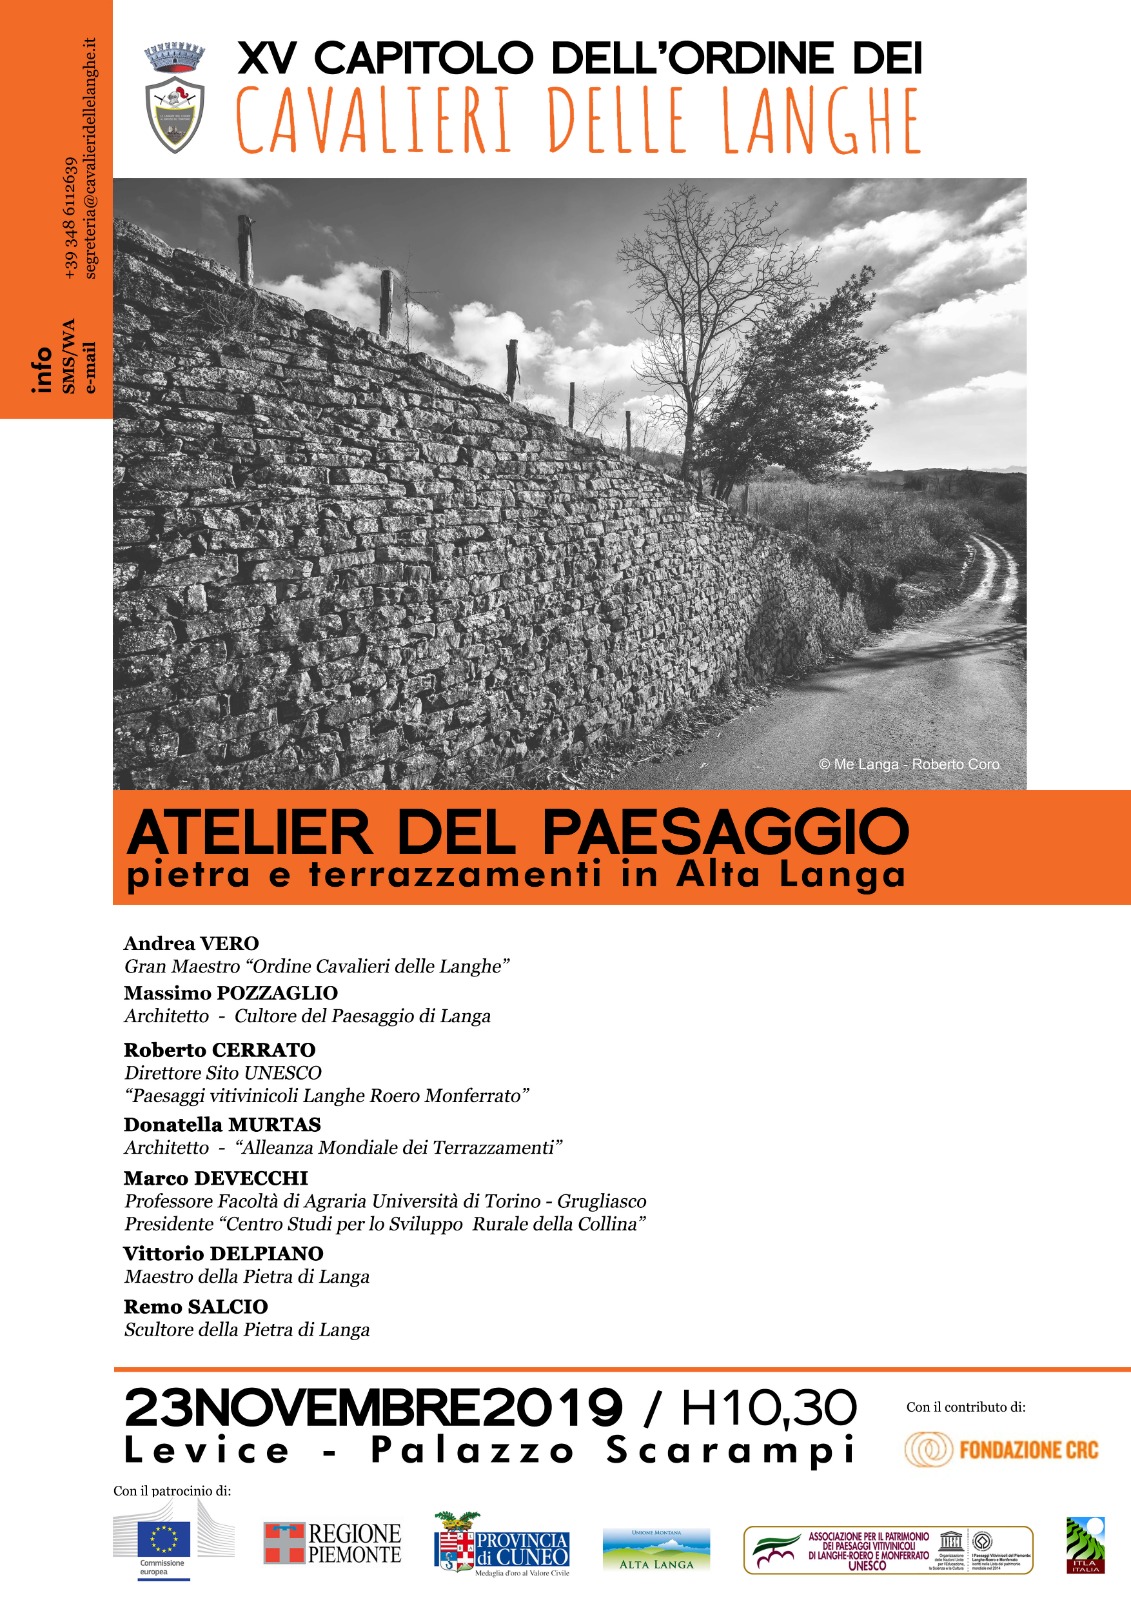 Depliant dell Atelier del paesaggio "Pietra e terrazzamenti in Alta Langa", Palazzo Scarampi a Levice, sabato 23 novembre 2019, ore 10.30.